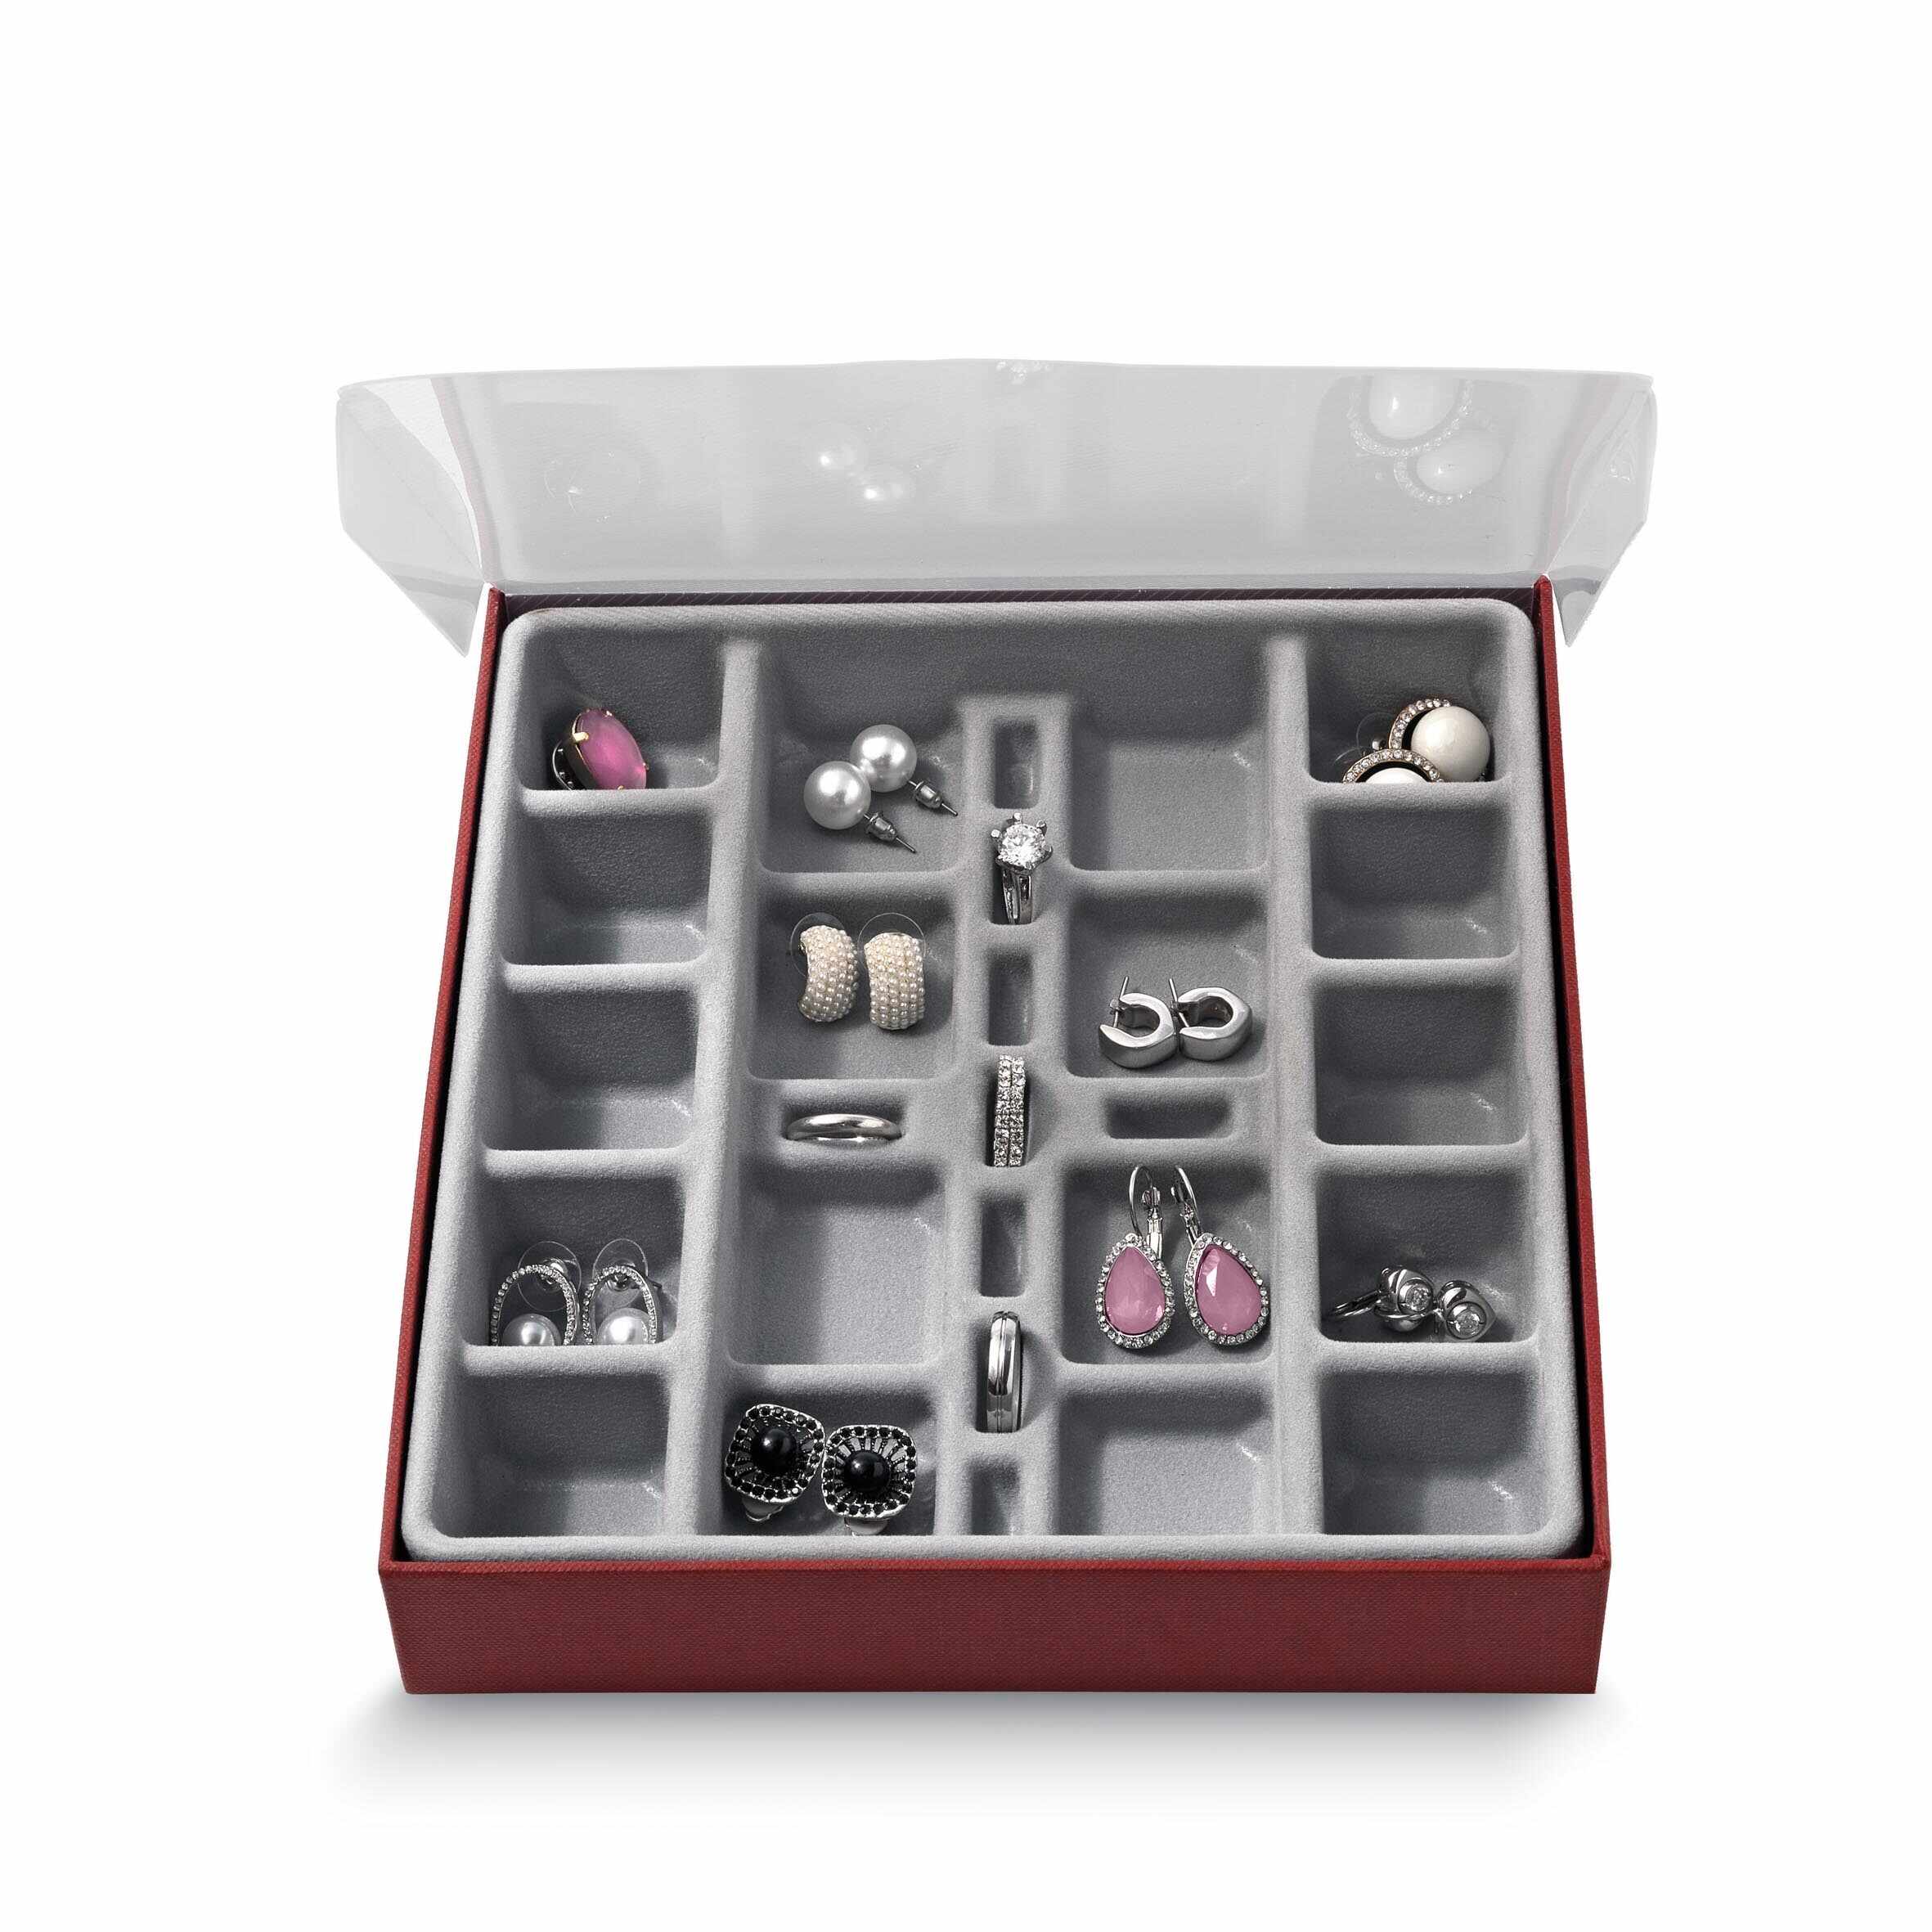 Organizator pentru sertar cu 27 compartimente, Jewel Gri, l18,5xA21,5xH3,5 cm